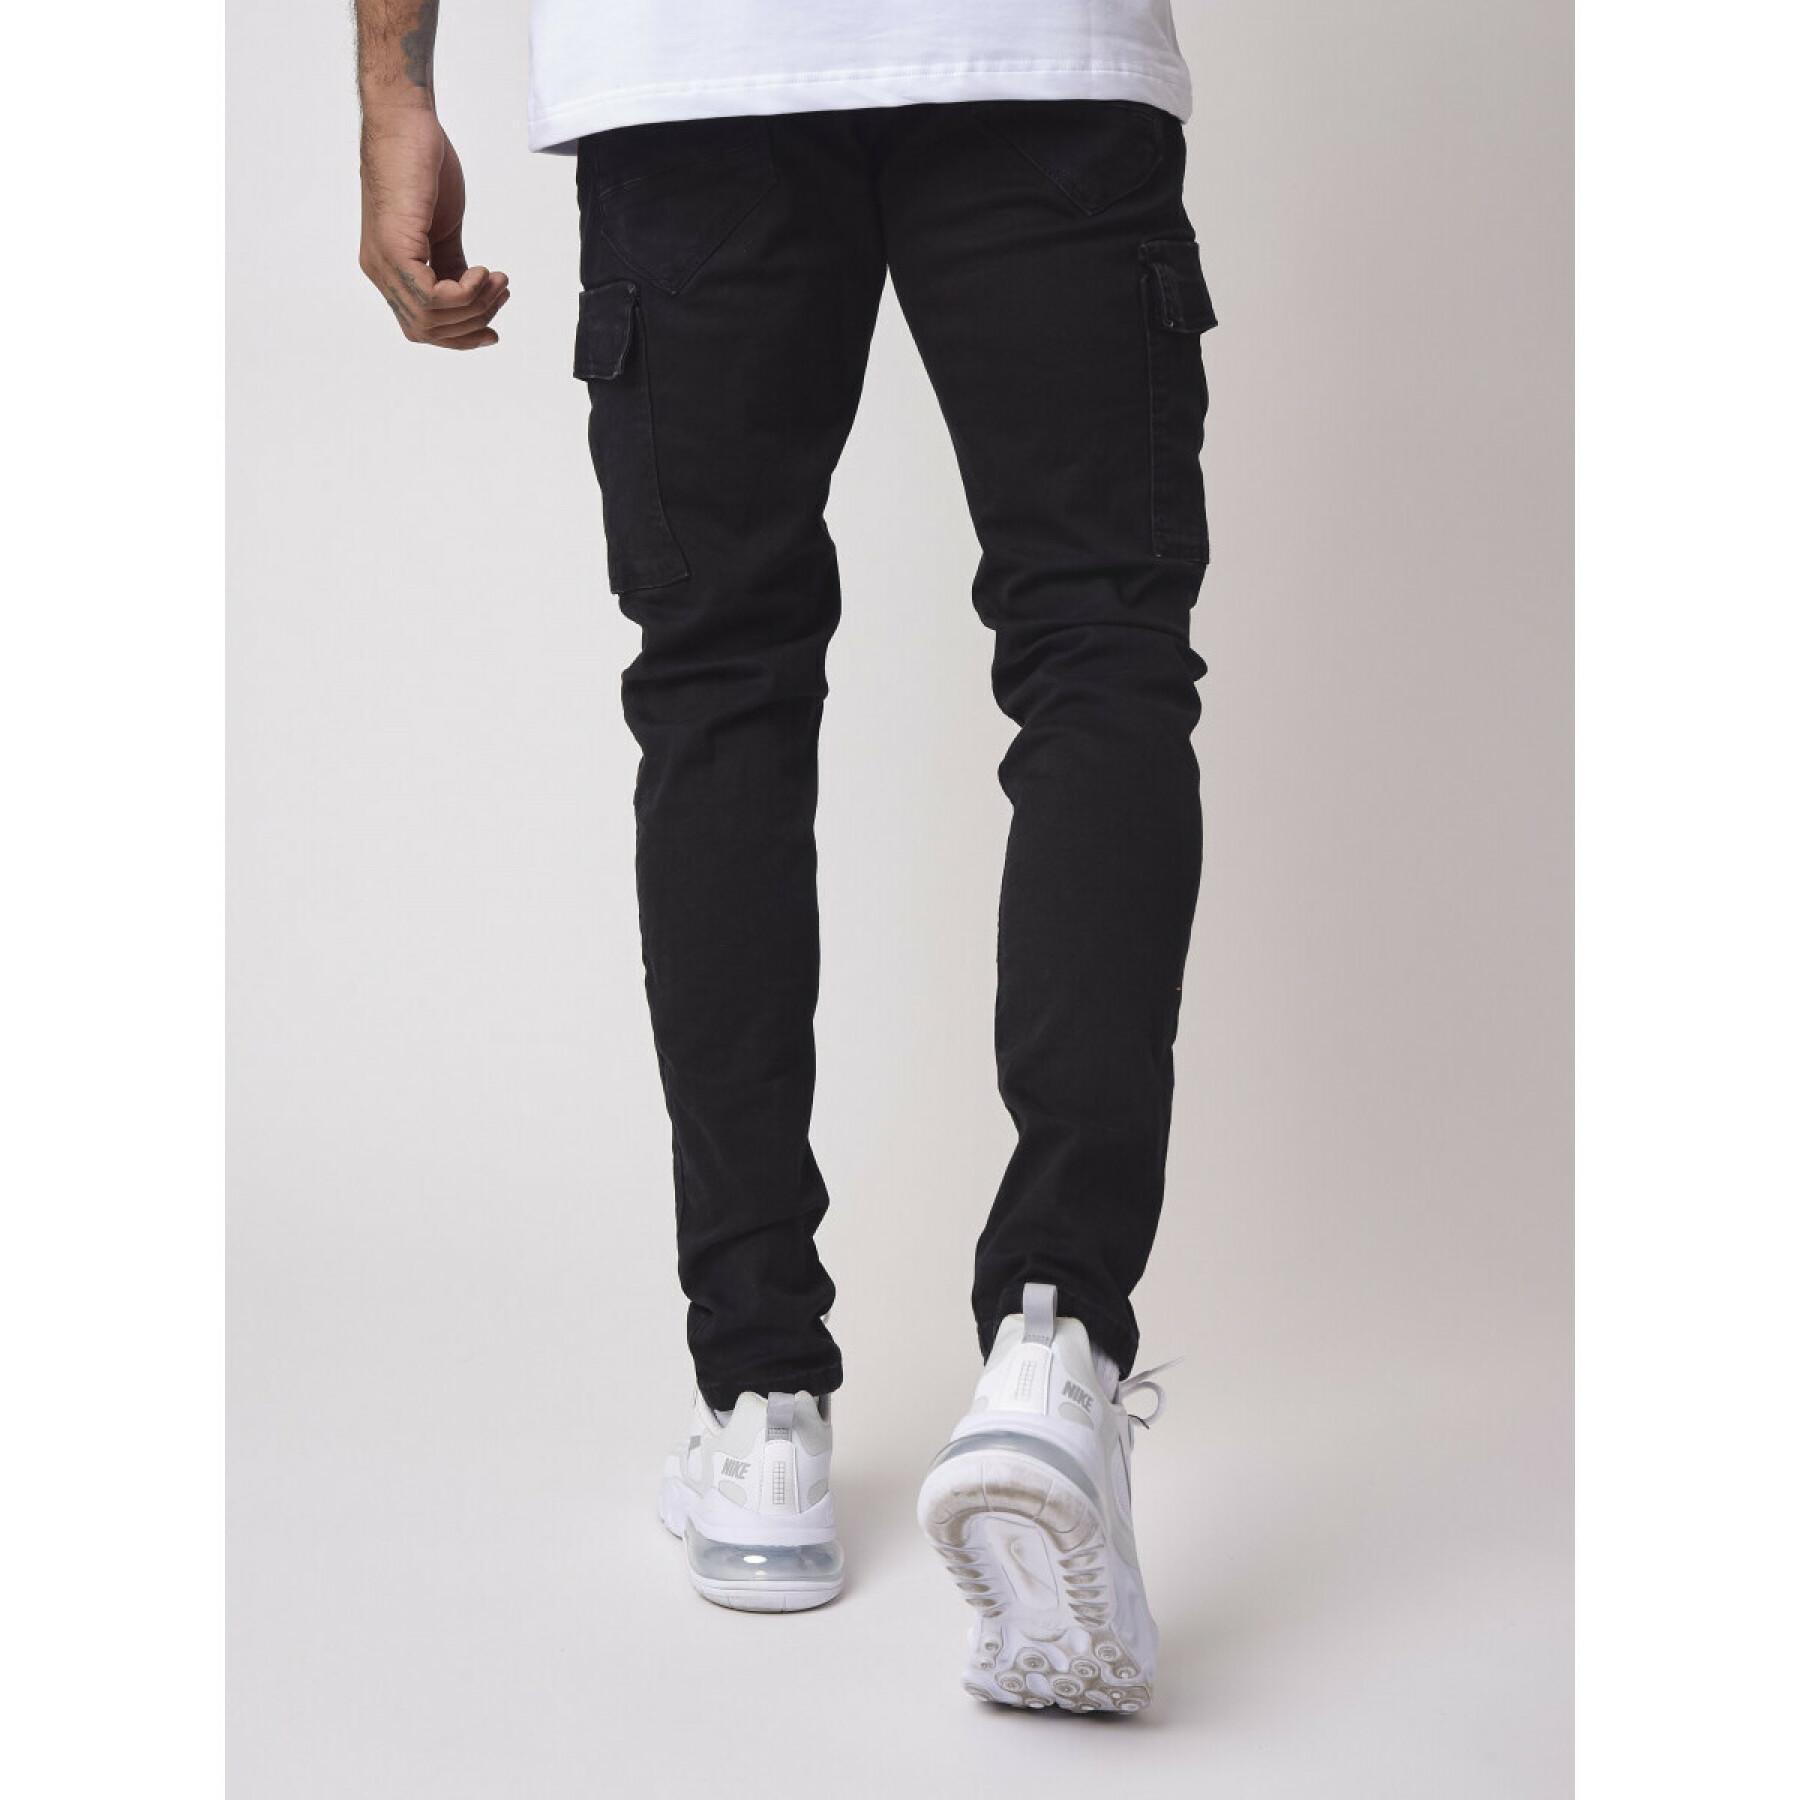 Slim fit cargo style jeans Project X Paris